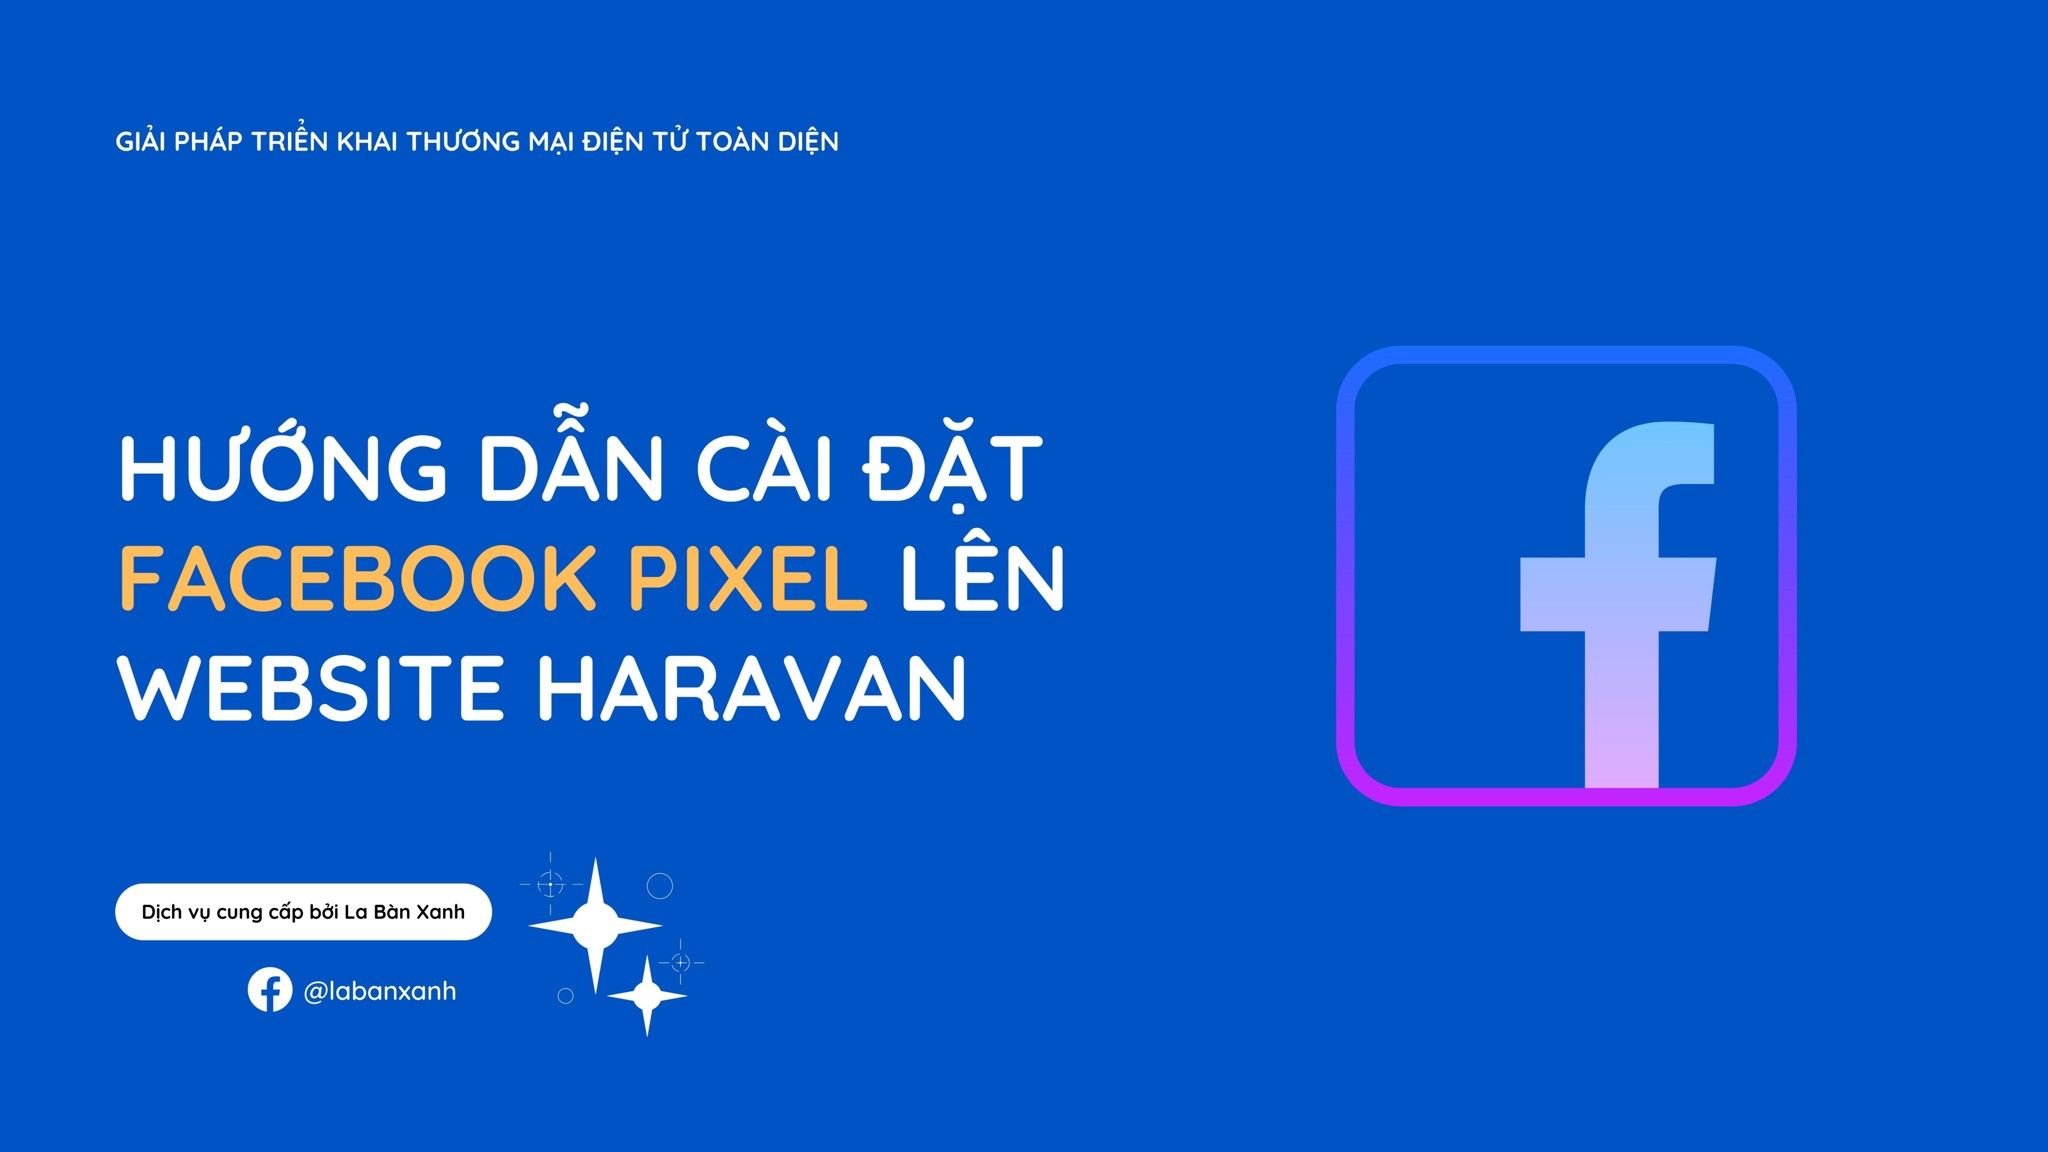 Facebook Pixel là công cụ hỗ trợ đắc lực cho các doanh nghiệp khi theo dõi và phân tích hành vi của khách hàng trên trang web. Nhờ tích hợp Facebook Pixel, bạn có thể tối ưu hóa chiến lược quảng cáo, tăng cường hiệu quả đối tượng khách hàng tiềm năng và thu hút nhiều lượt quan tâm cho doanh nghiệp của mình.